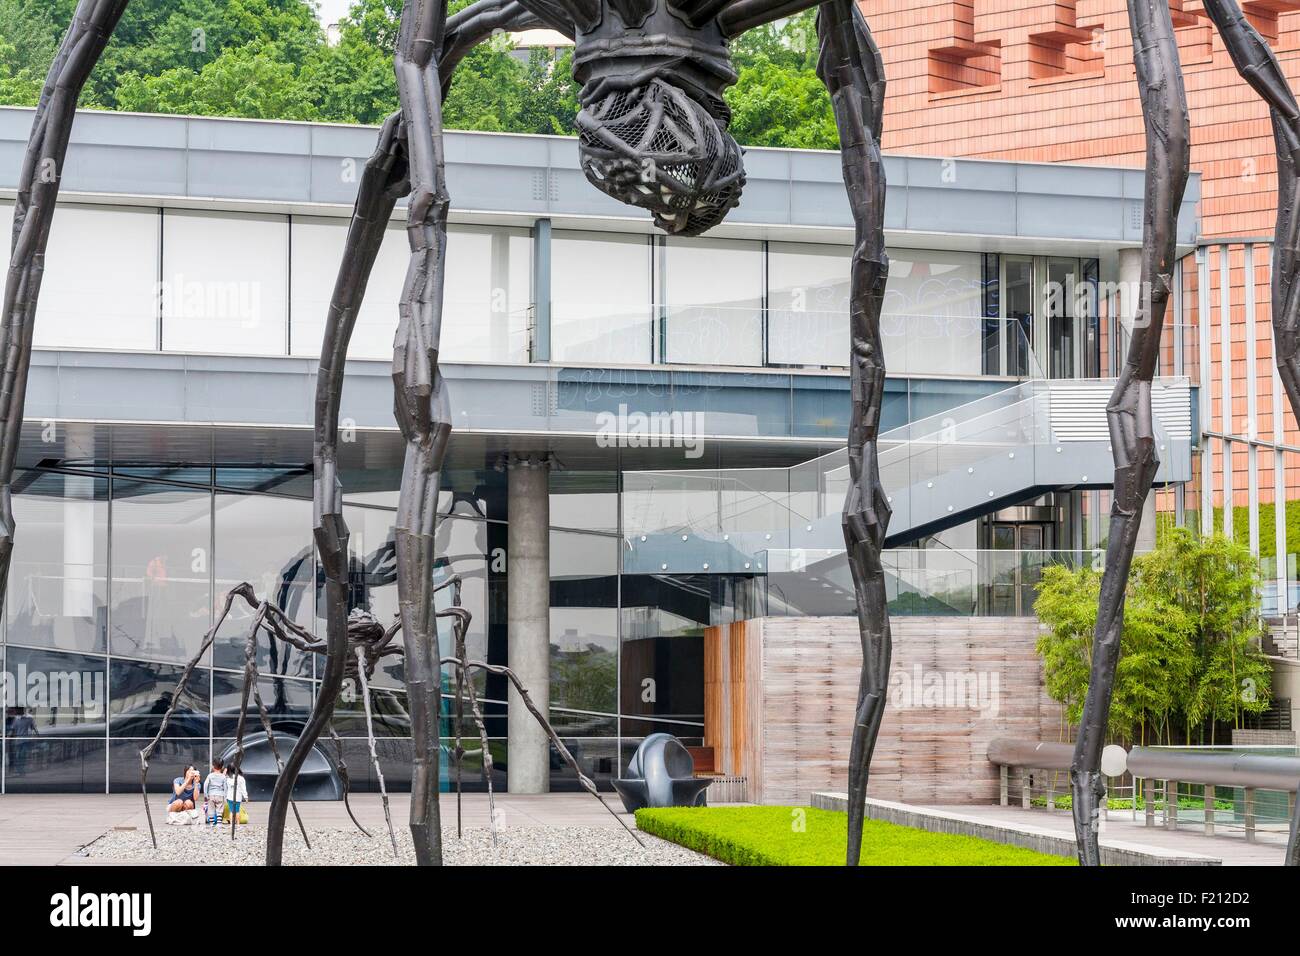 La Corée du Sud, Séoul, Hannam-dong, (Musée Leeum Samsung Museum of Art) musée consacré à l'art et la culture coréenne conçue par les architectes Jean Nouvel, Rem Koolhaas, Mario Botta et achevé en 2004, avec l'Esplanade des sculptures de Louise Bourgeois Banque D'Images